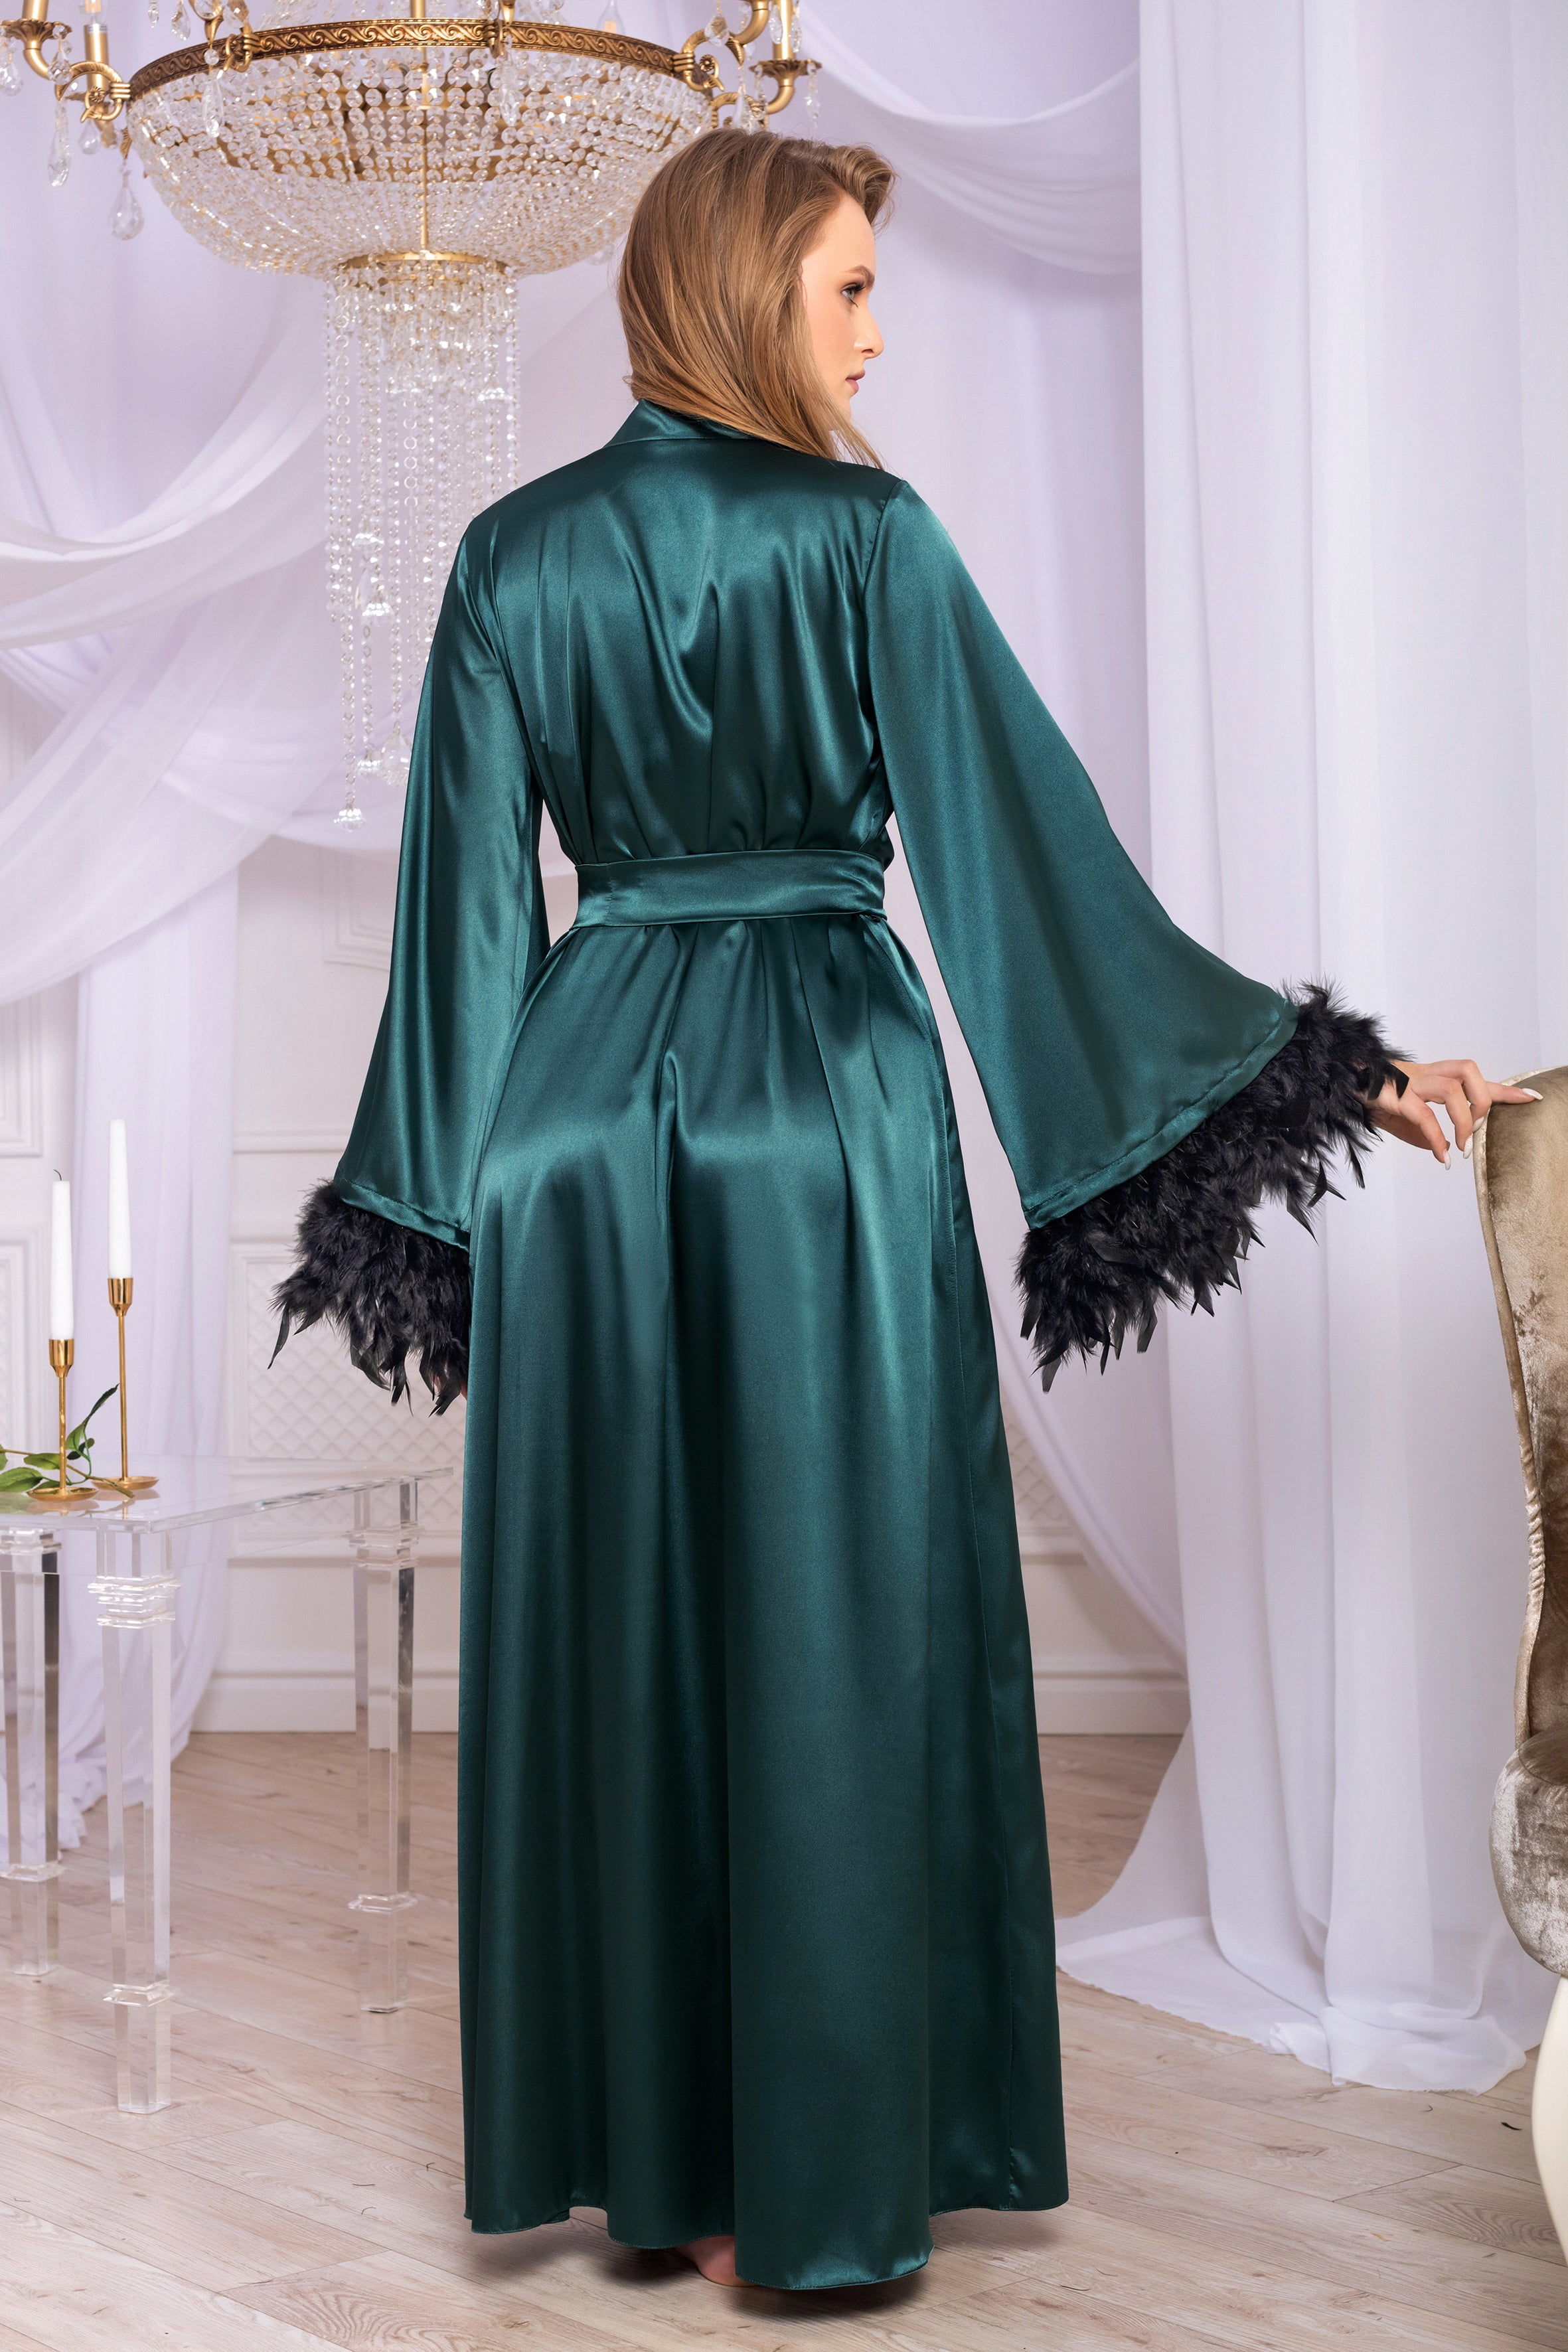 Feather trim boudoir robe Green satin